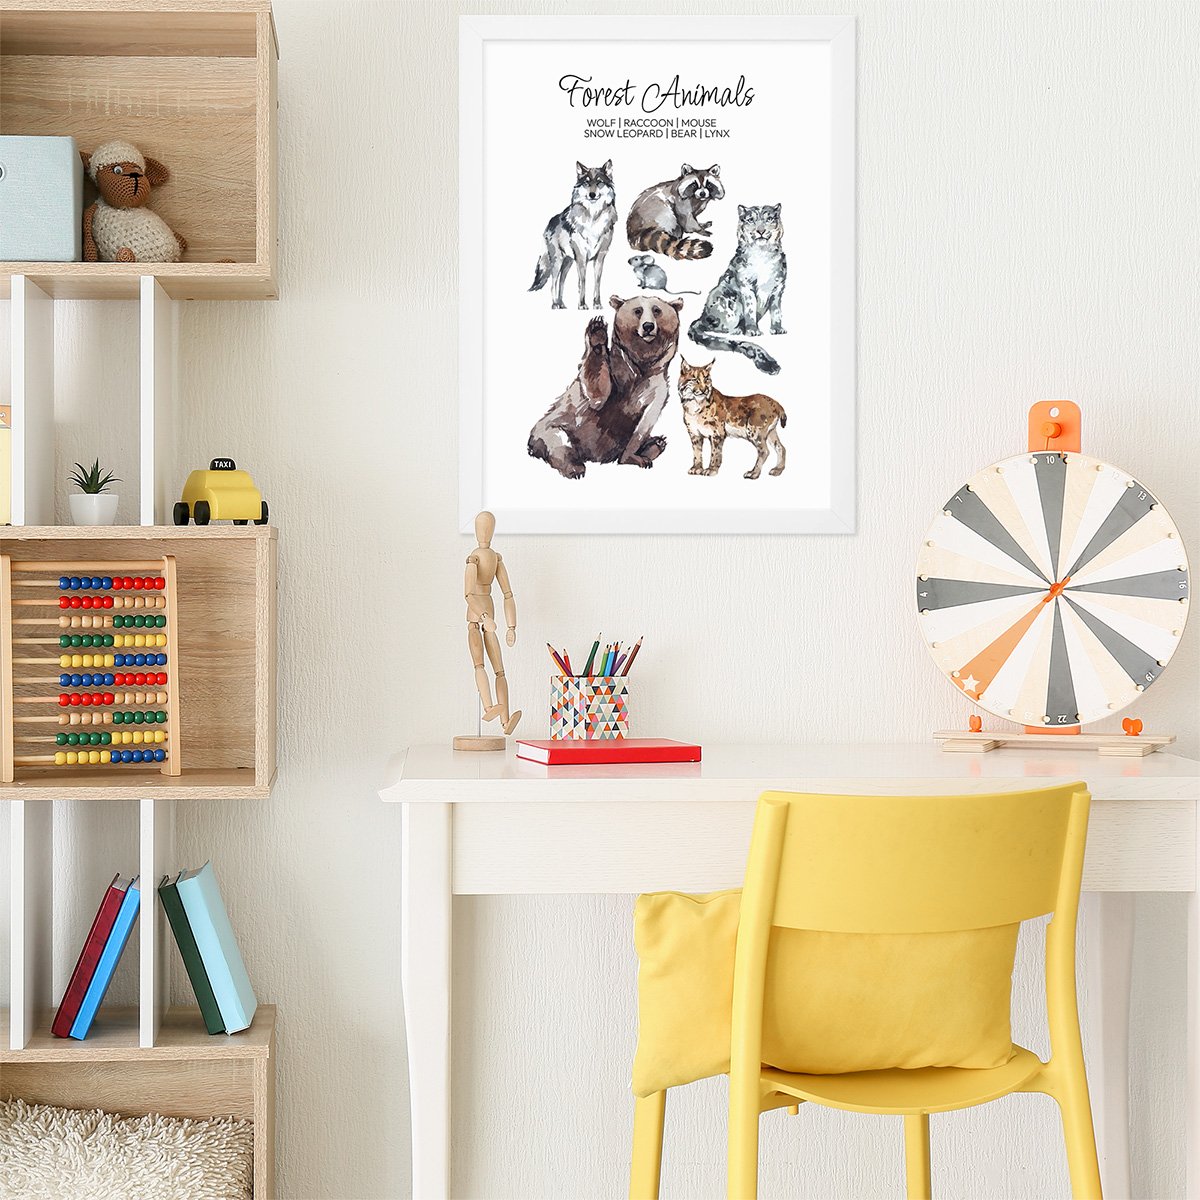 Plakat edukacyjny dla dzieci ze zwierzętami leśnymi i nazwami gatunków w języku angielskim